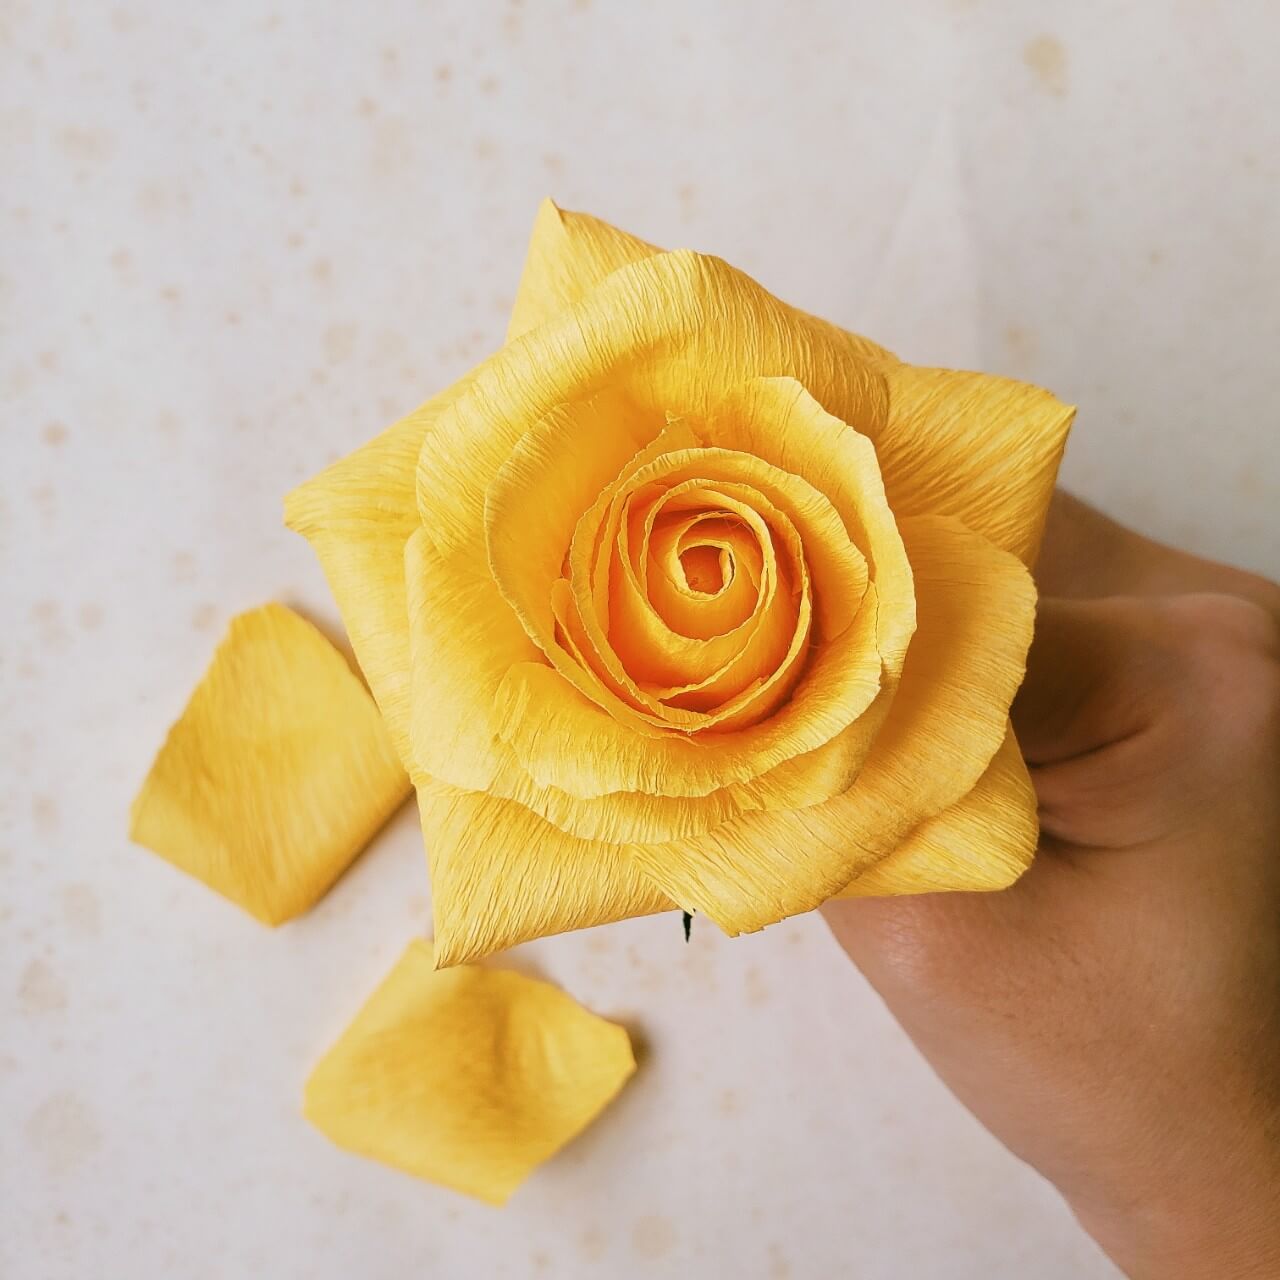 6 Cách làm hoa hồng bằng giấy [Nhún, Giấy vệ sinh, Ruy băng, Giấy A4]